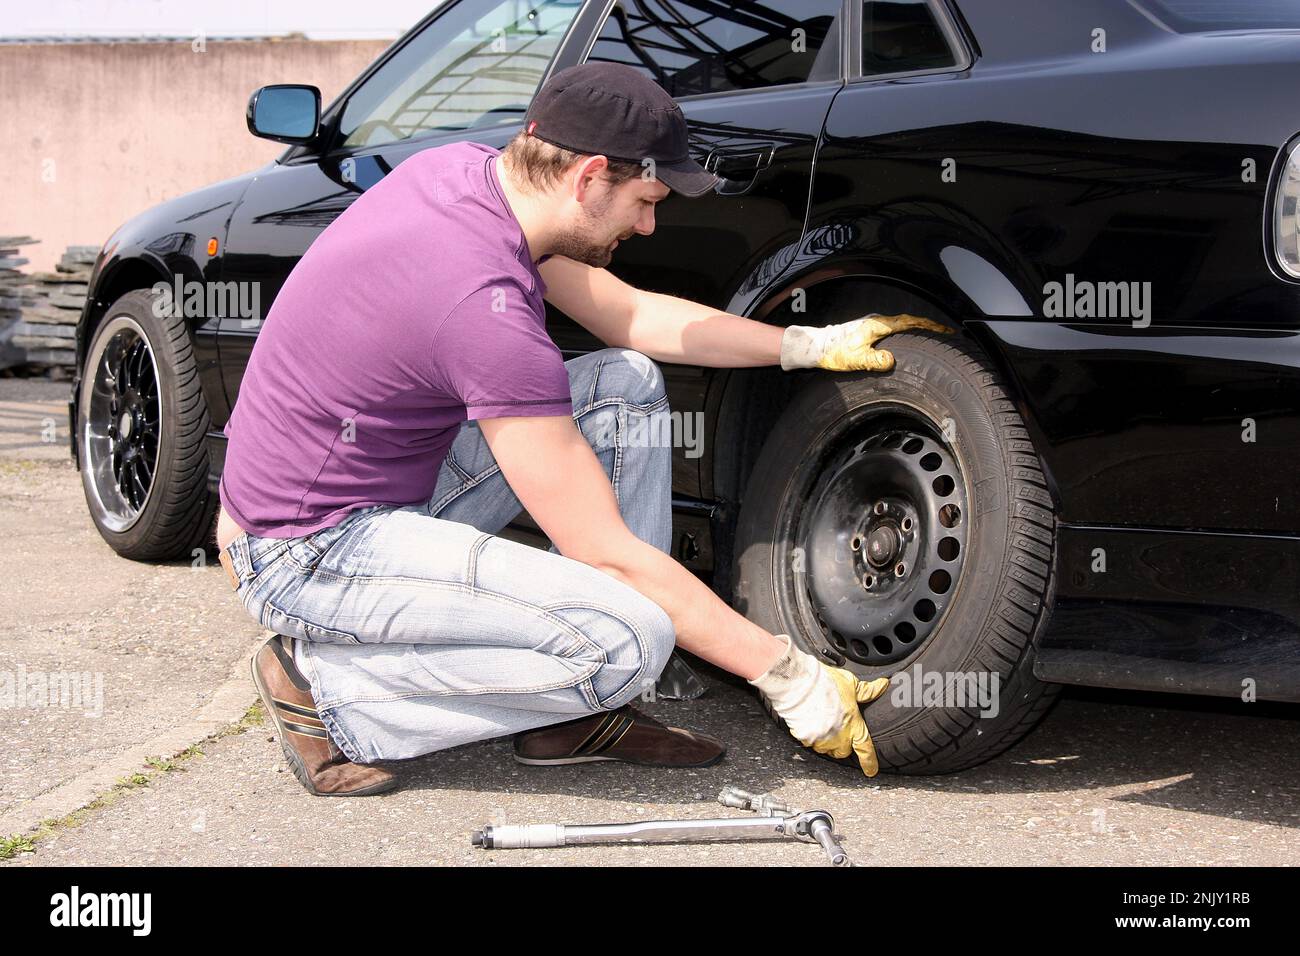 changement de pneu, jeune homme change les pneus sommer en pneus d'hiver, image de série 6/13 Banque D'Images